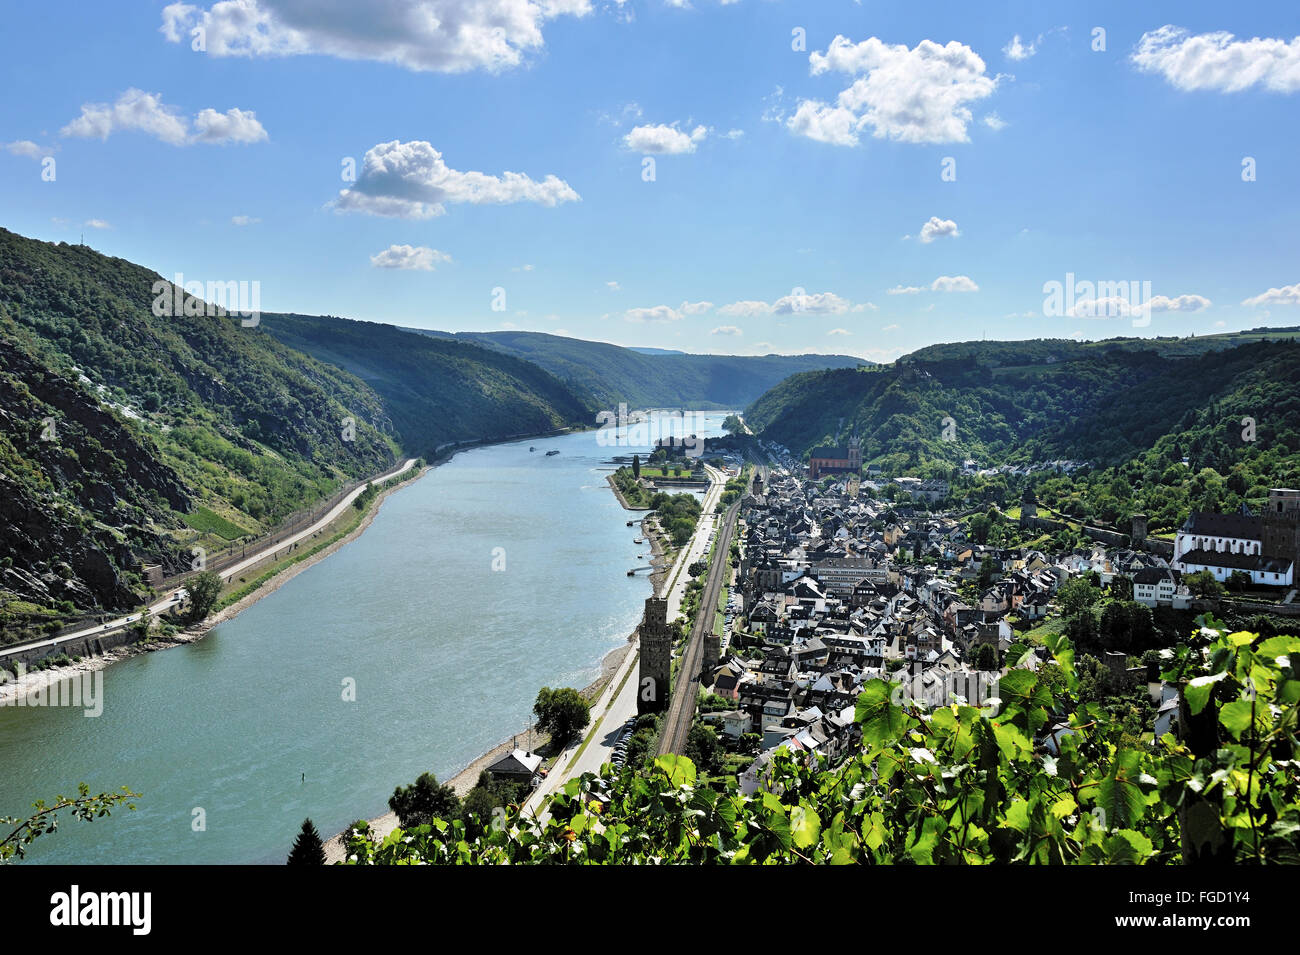 La vallée du Rhin moyen, avec ville Oberwesel, Vallée du Haut-Rhin moyen, Allemagne Banque D'Images